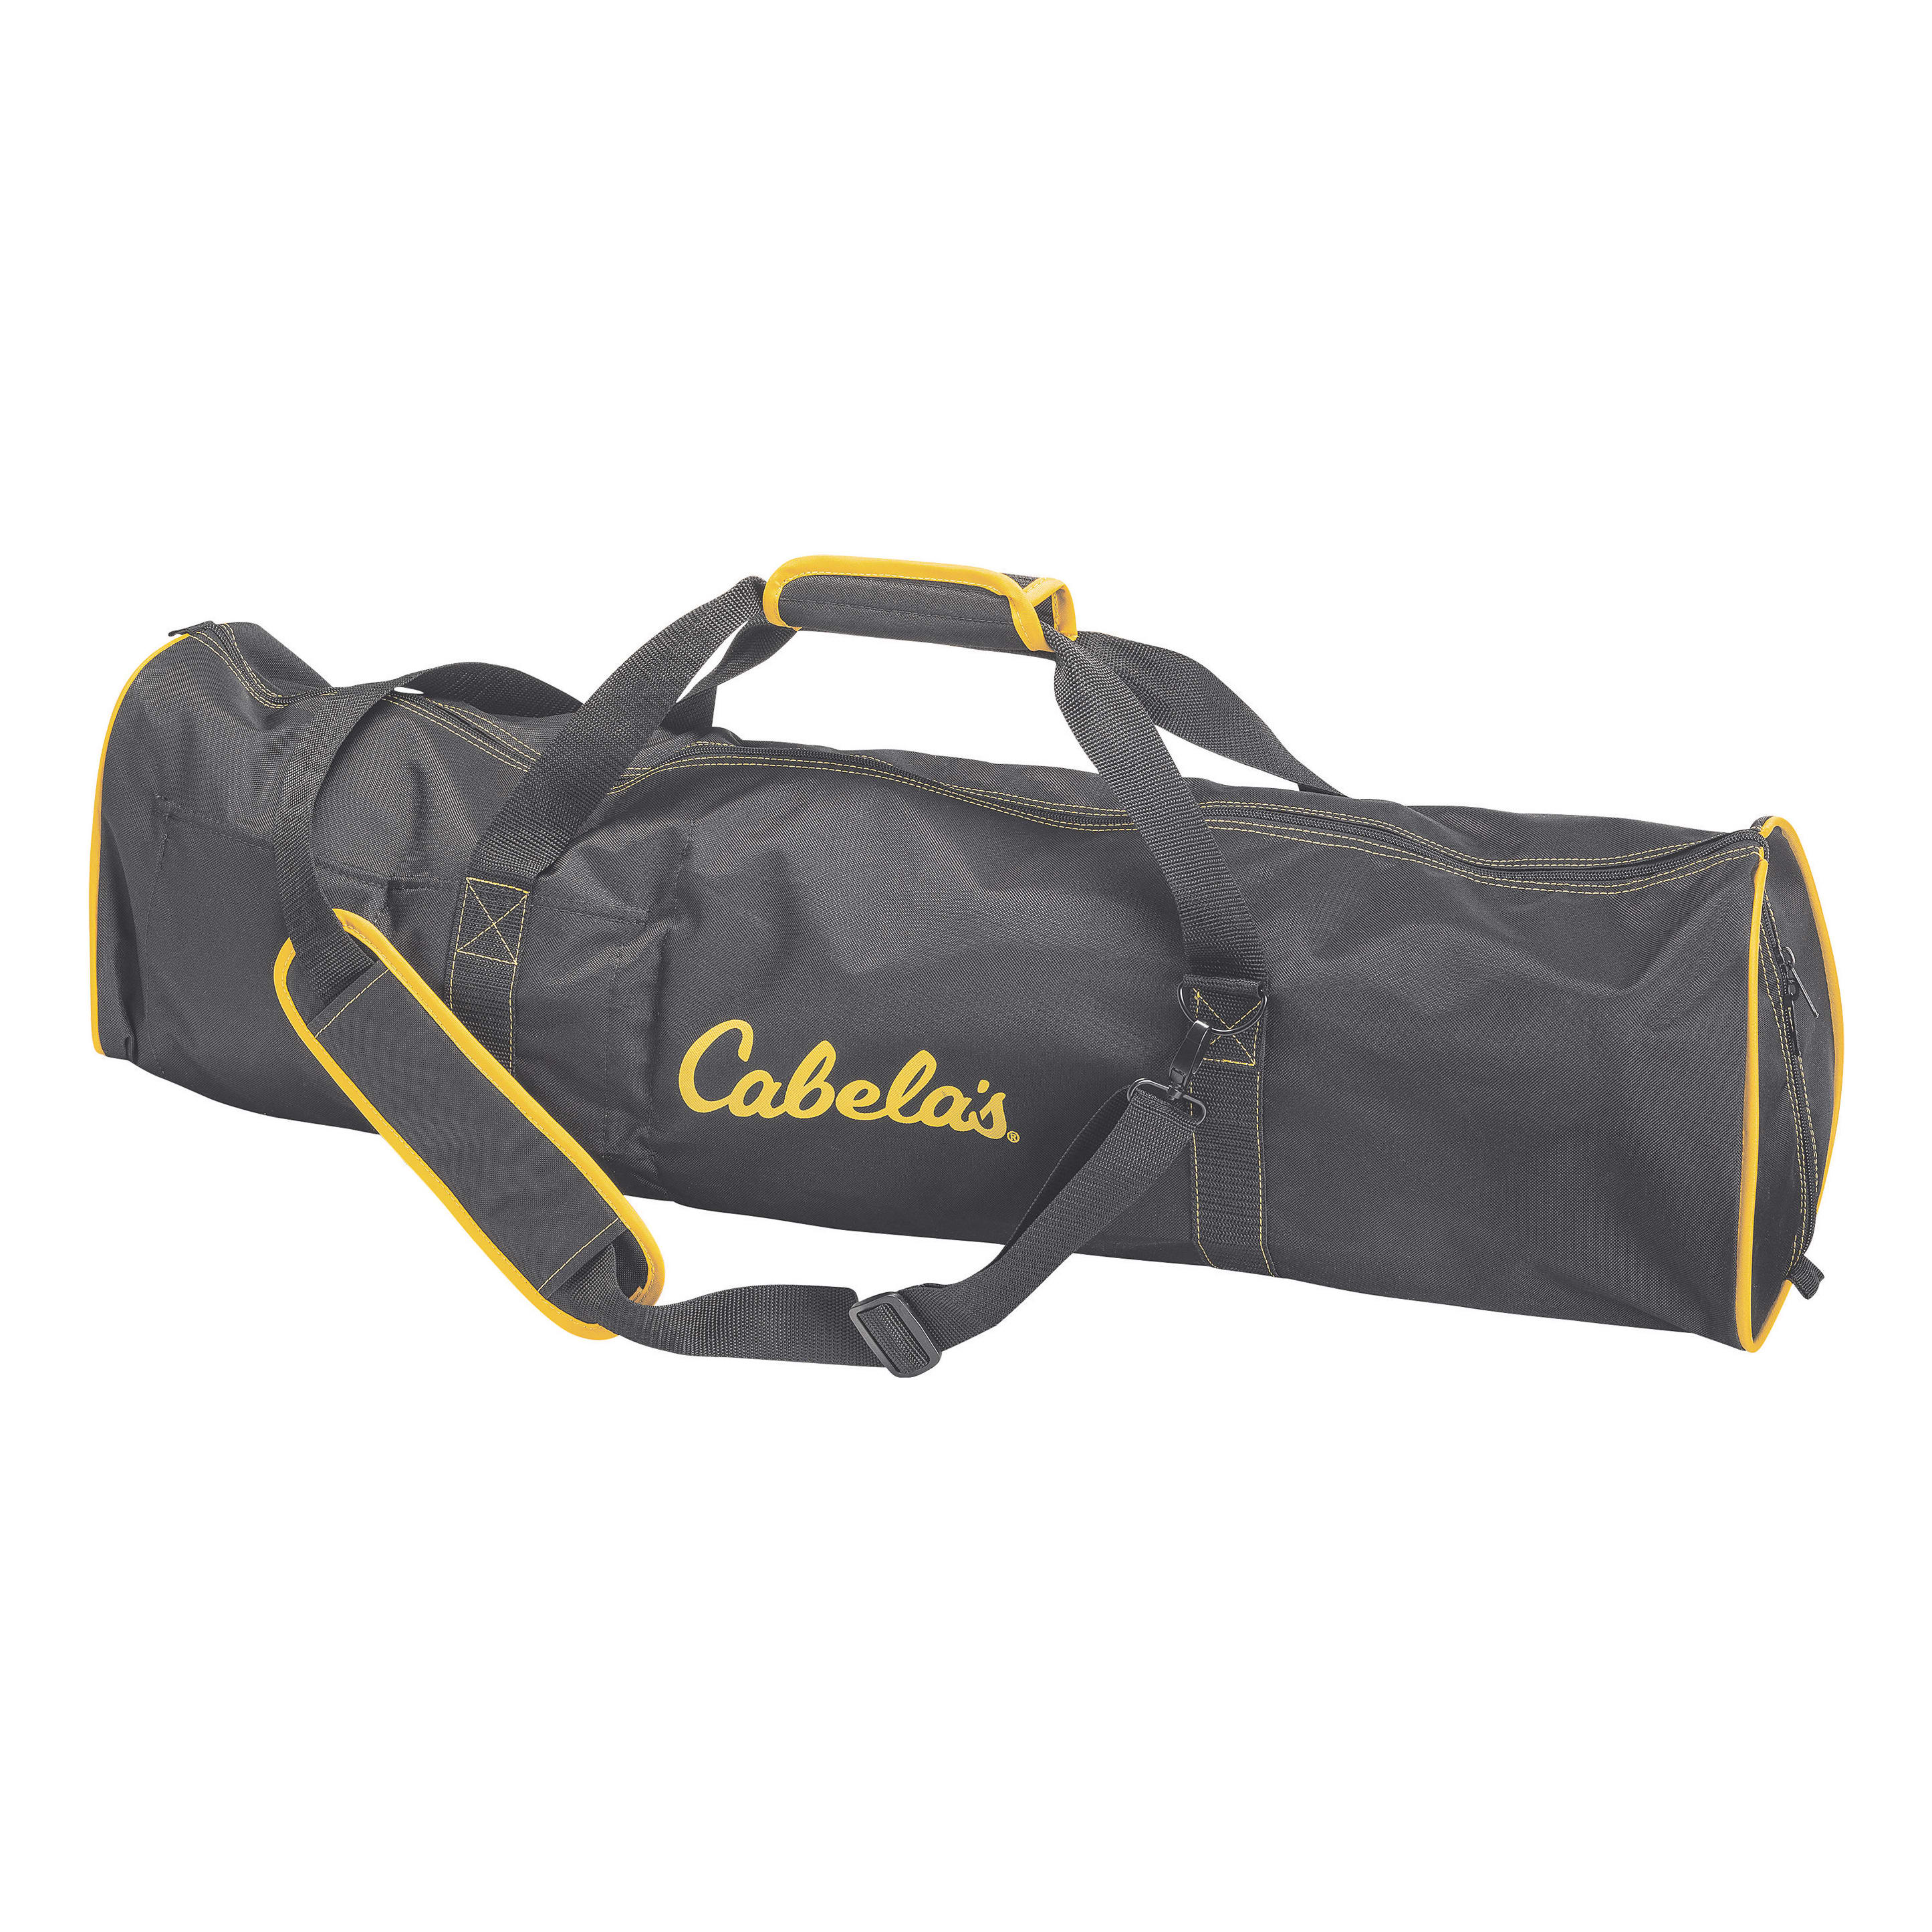 Cabela’s Cordless Drill Auger Carry Bag - Cabelas - XPS - Accessories